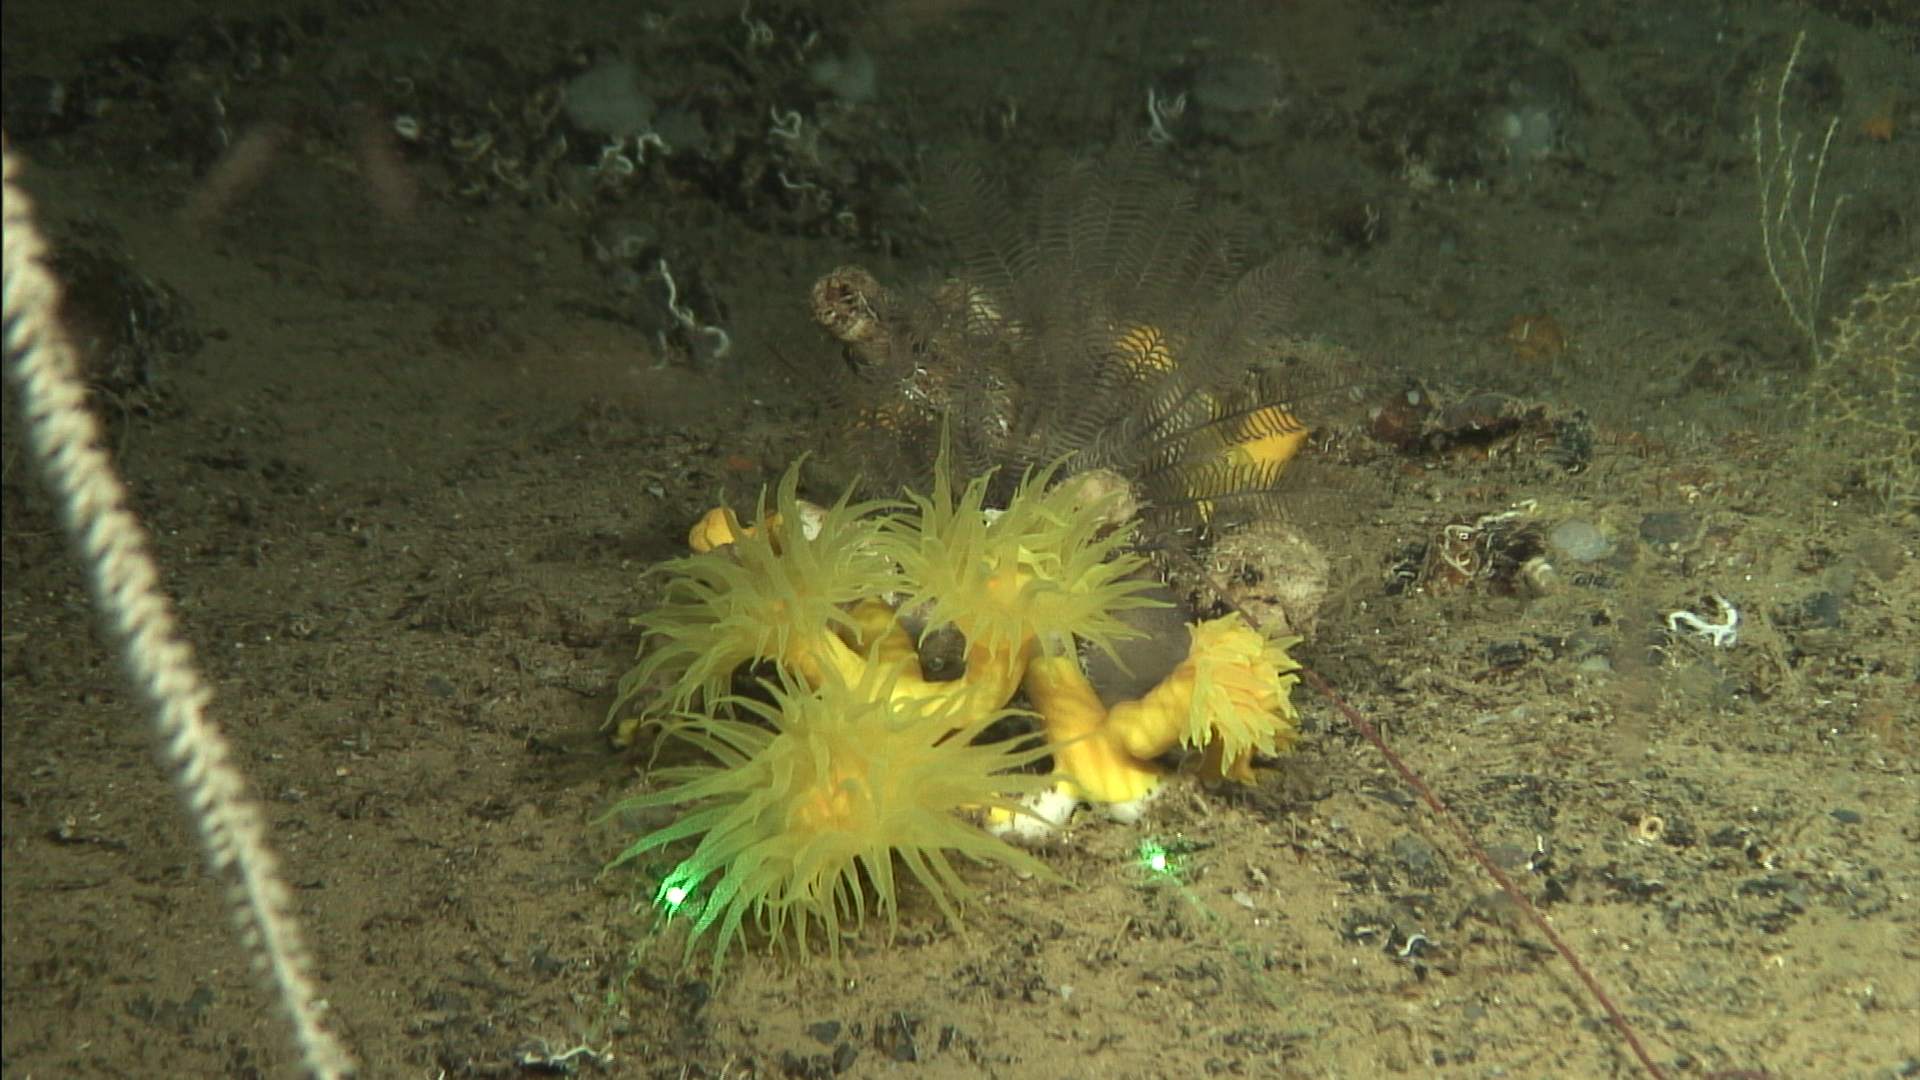 Coral amarillo (Dendrophyllia cornigera) fotografiado en el curso de una de las campañas realizadas por el equipo INTEMARES Murcia compuesto por investigadores del IEO y la Universidad de Alicante